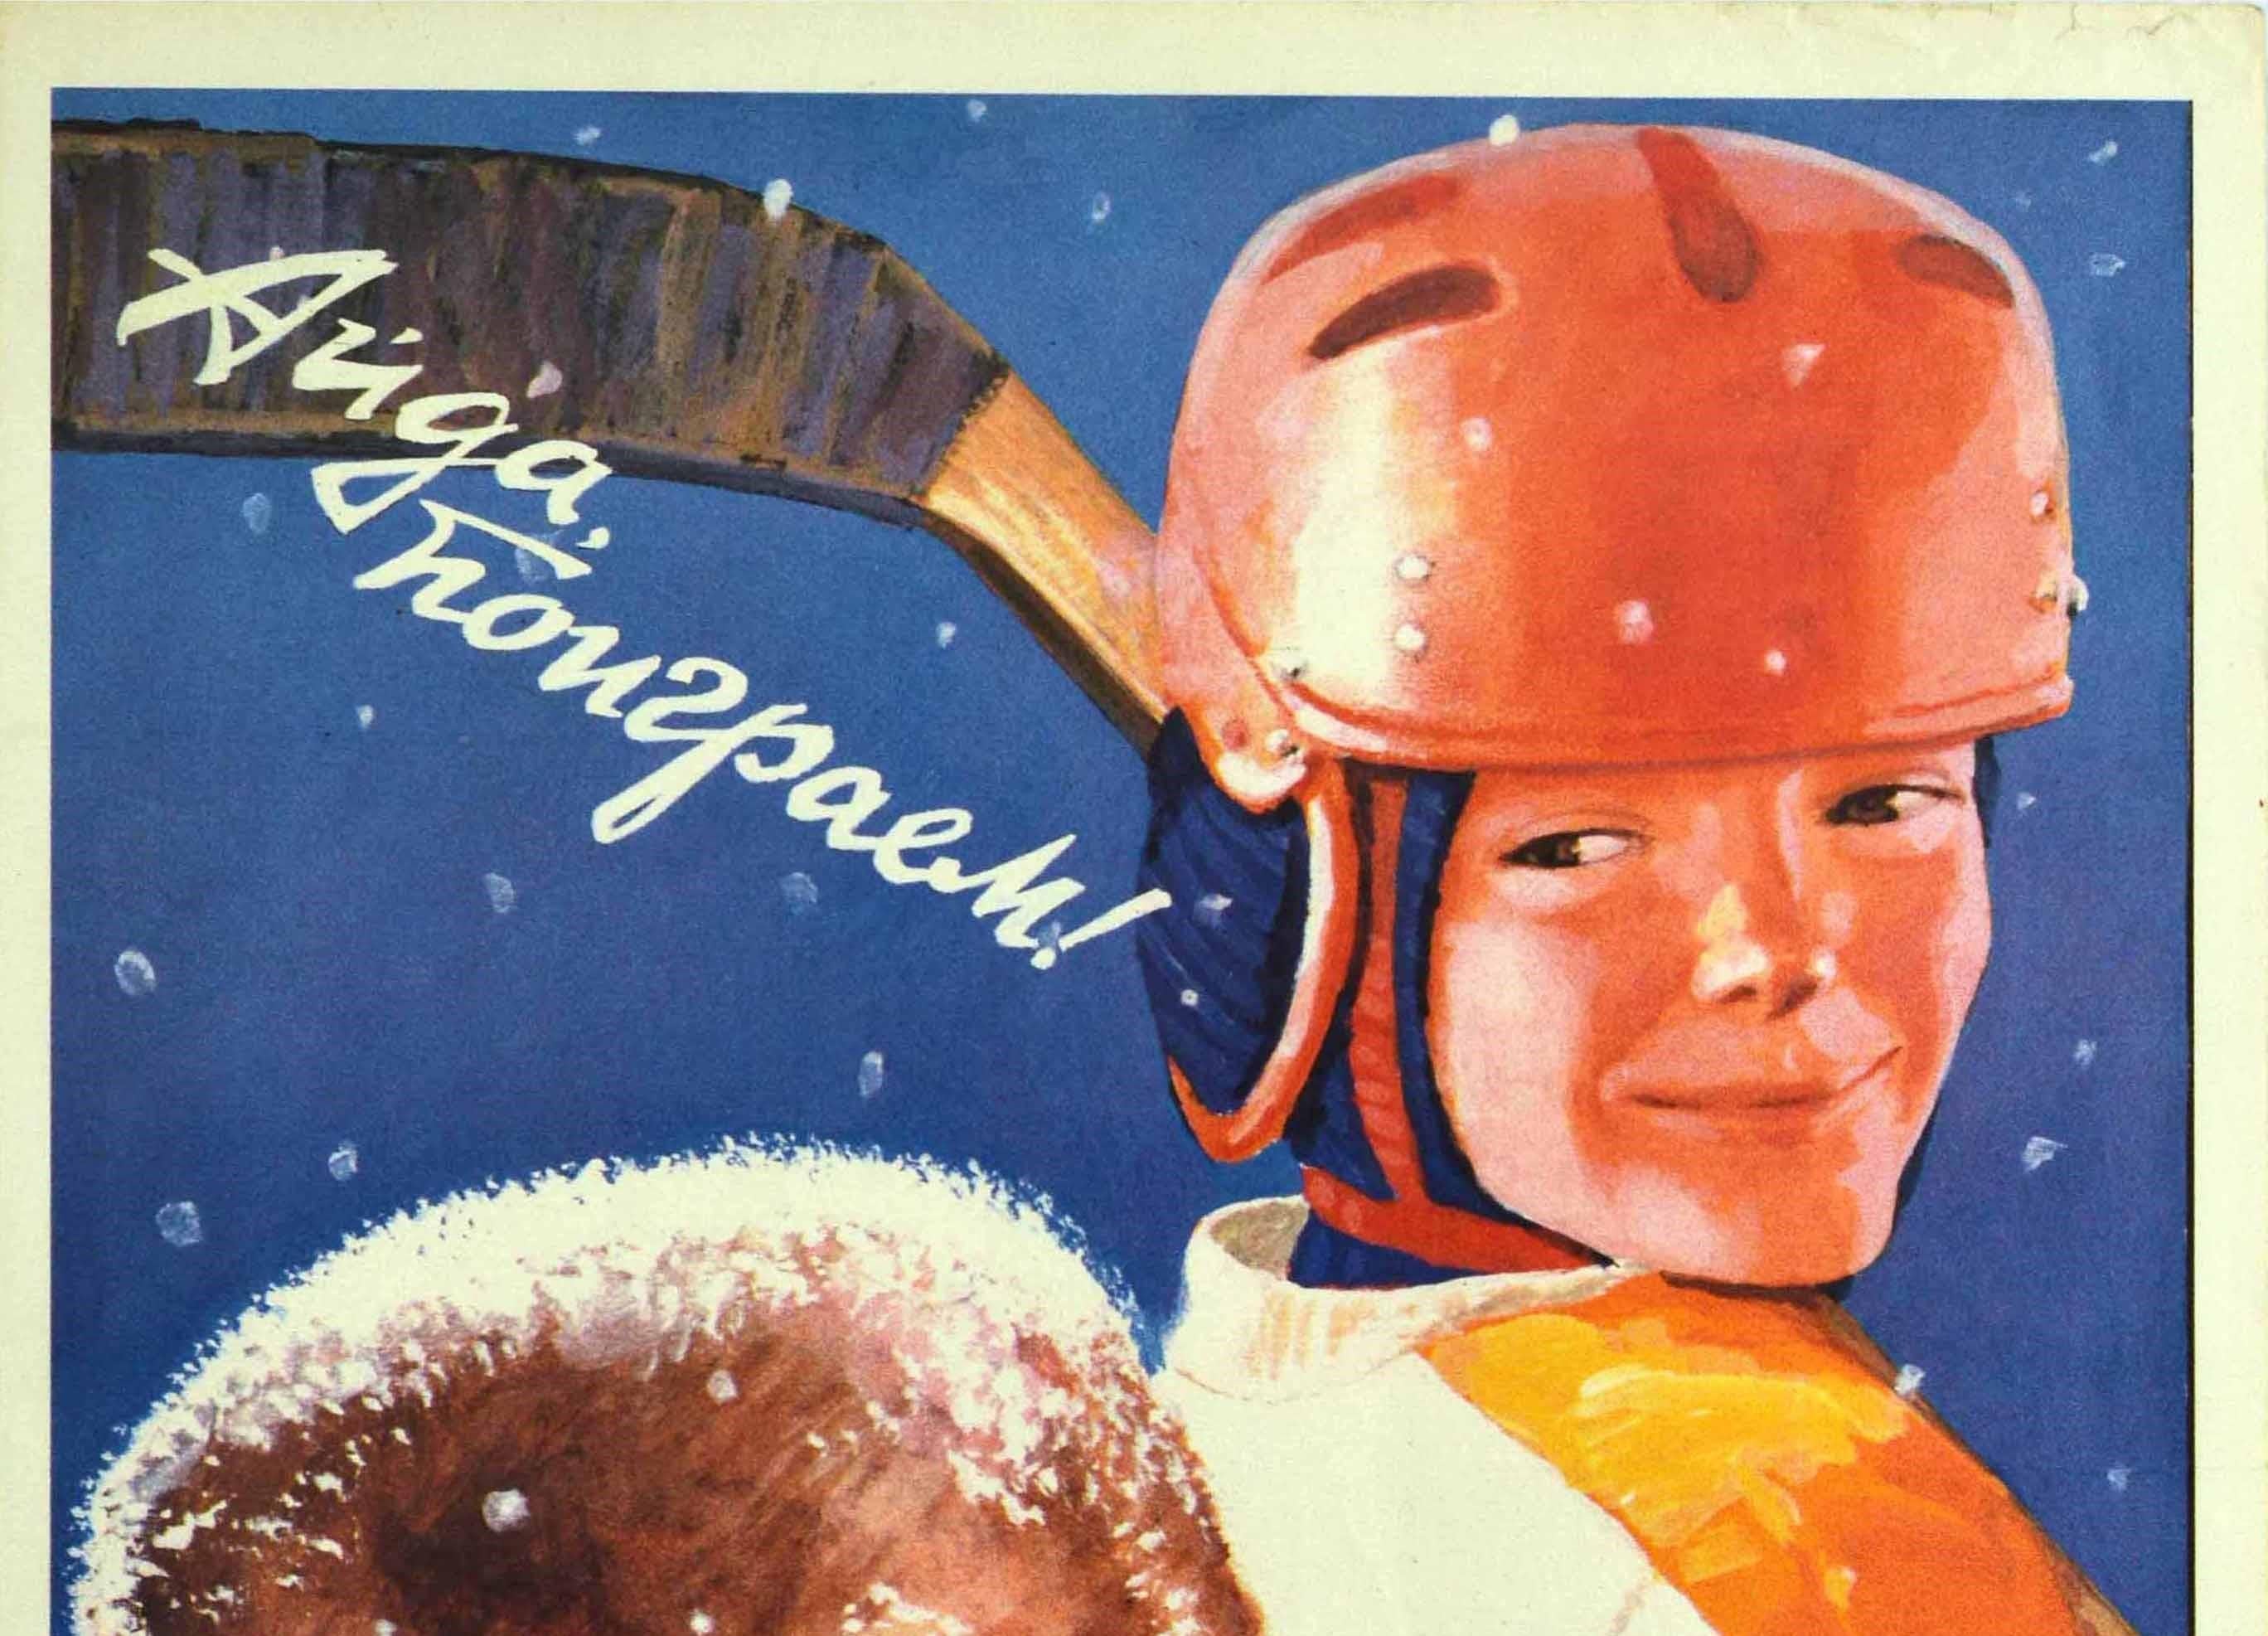 Affiche originale de propagande sportive soviétique d'époque - ? ???, ? ???????! / Let's go Play ! - présentant une superbe illustration d'un enfant coiffé d'une ushanka russe traditionnelle et d'une écharpe masquant son visage pour se protéger du